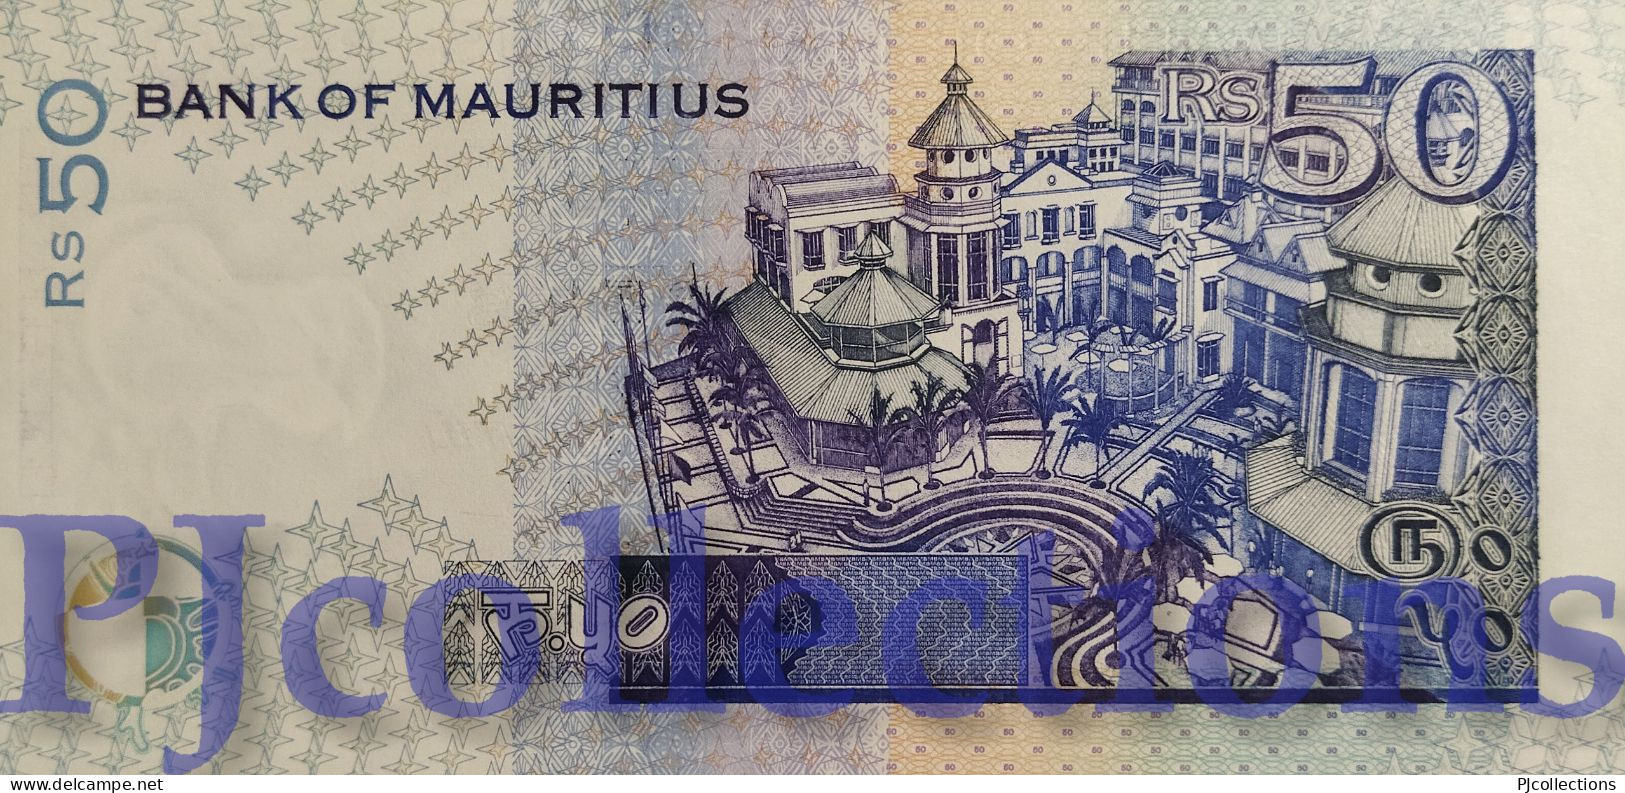 MAURITIUS 50 RUPEES 1998 PICK 43 UNC - Mauricio